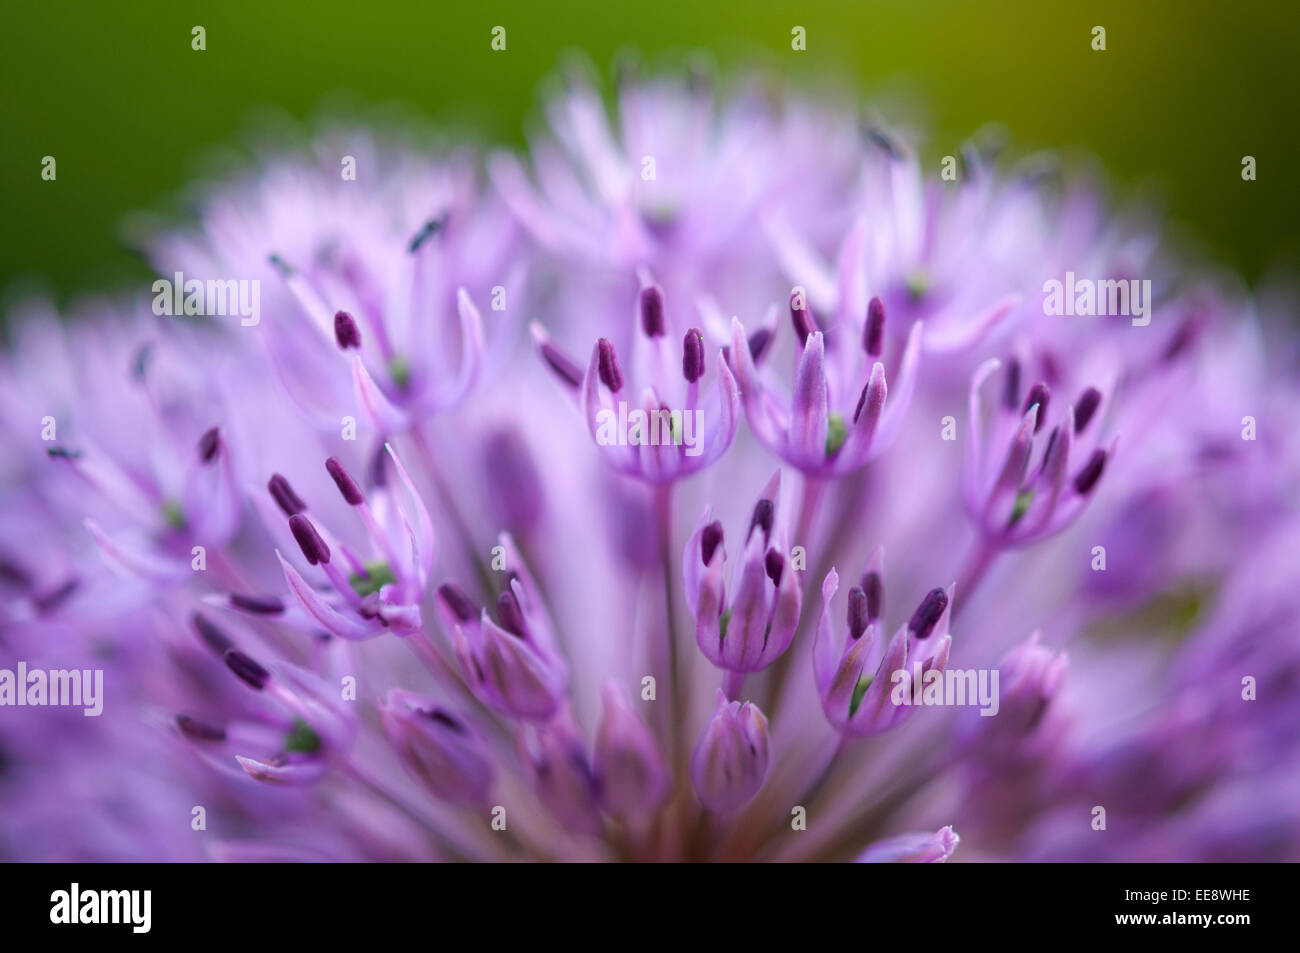 Lila Allium Blume in Nahaufnahme mit geringen Schärfentiefe, die sanfte Farben zu geben. Stockfoto